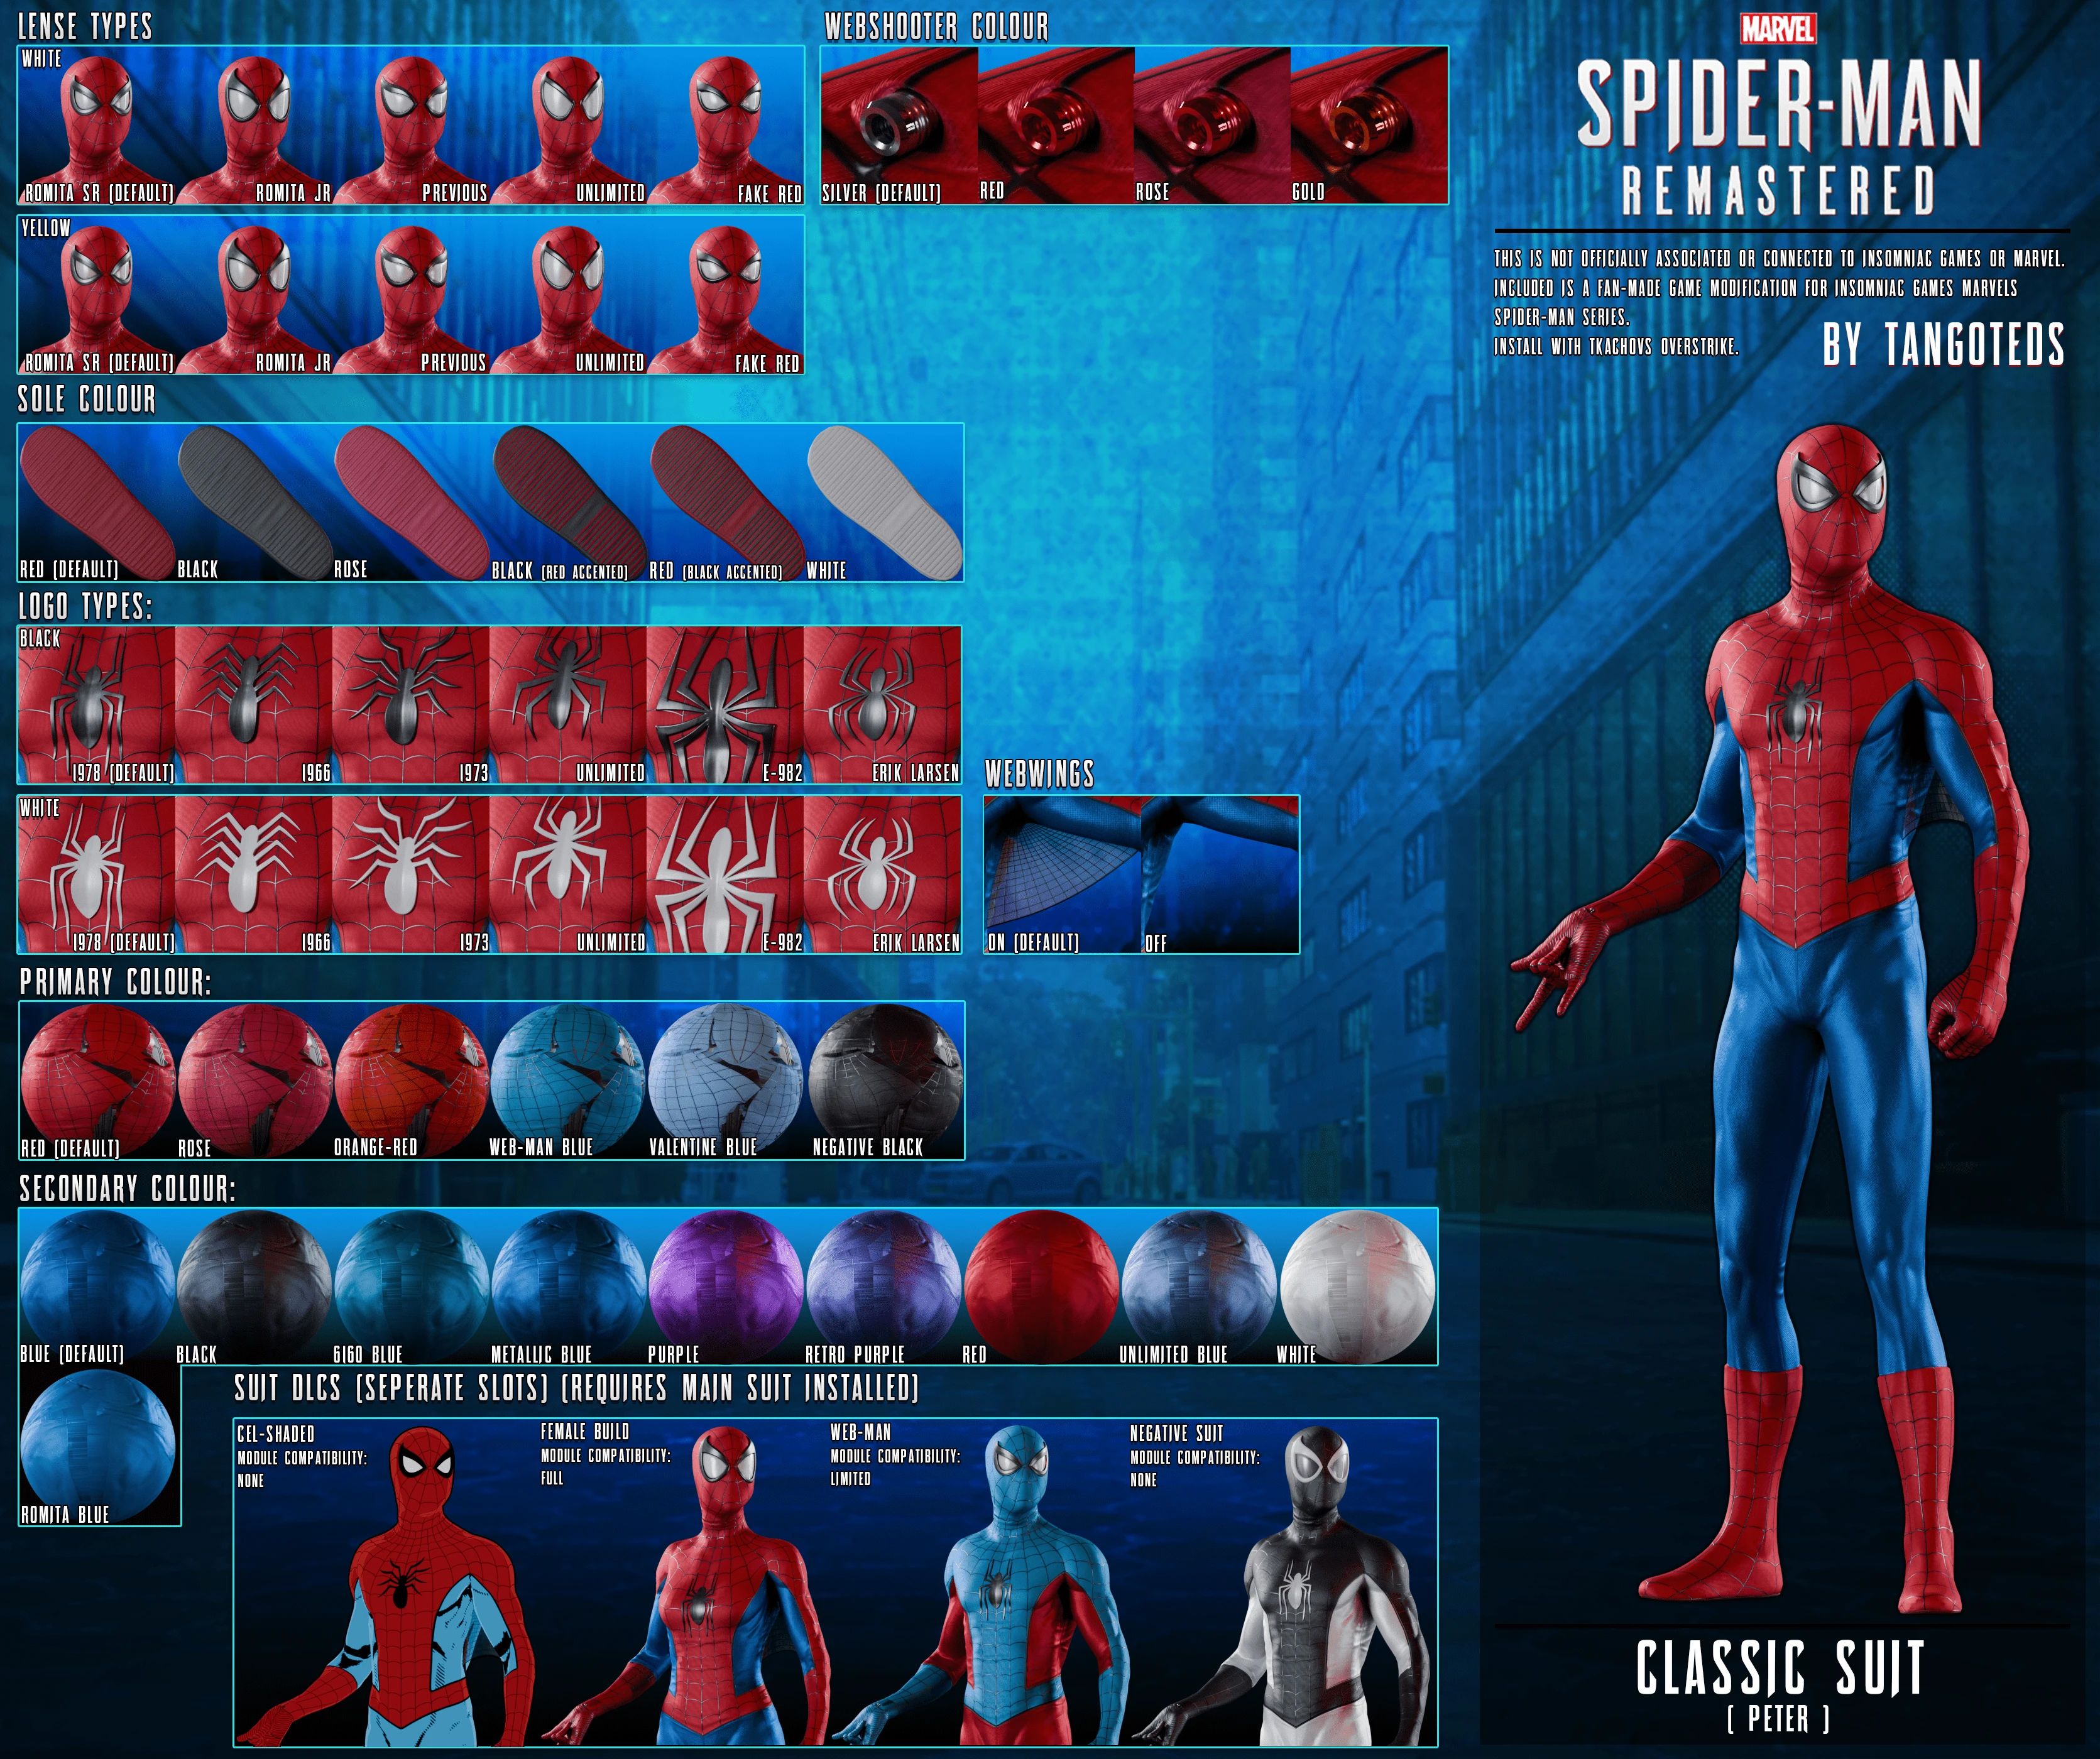 Spider-Man - Setelan klasik modular TangoTeds